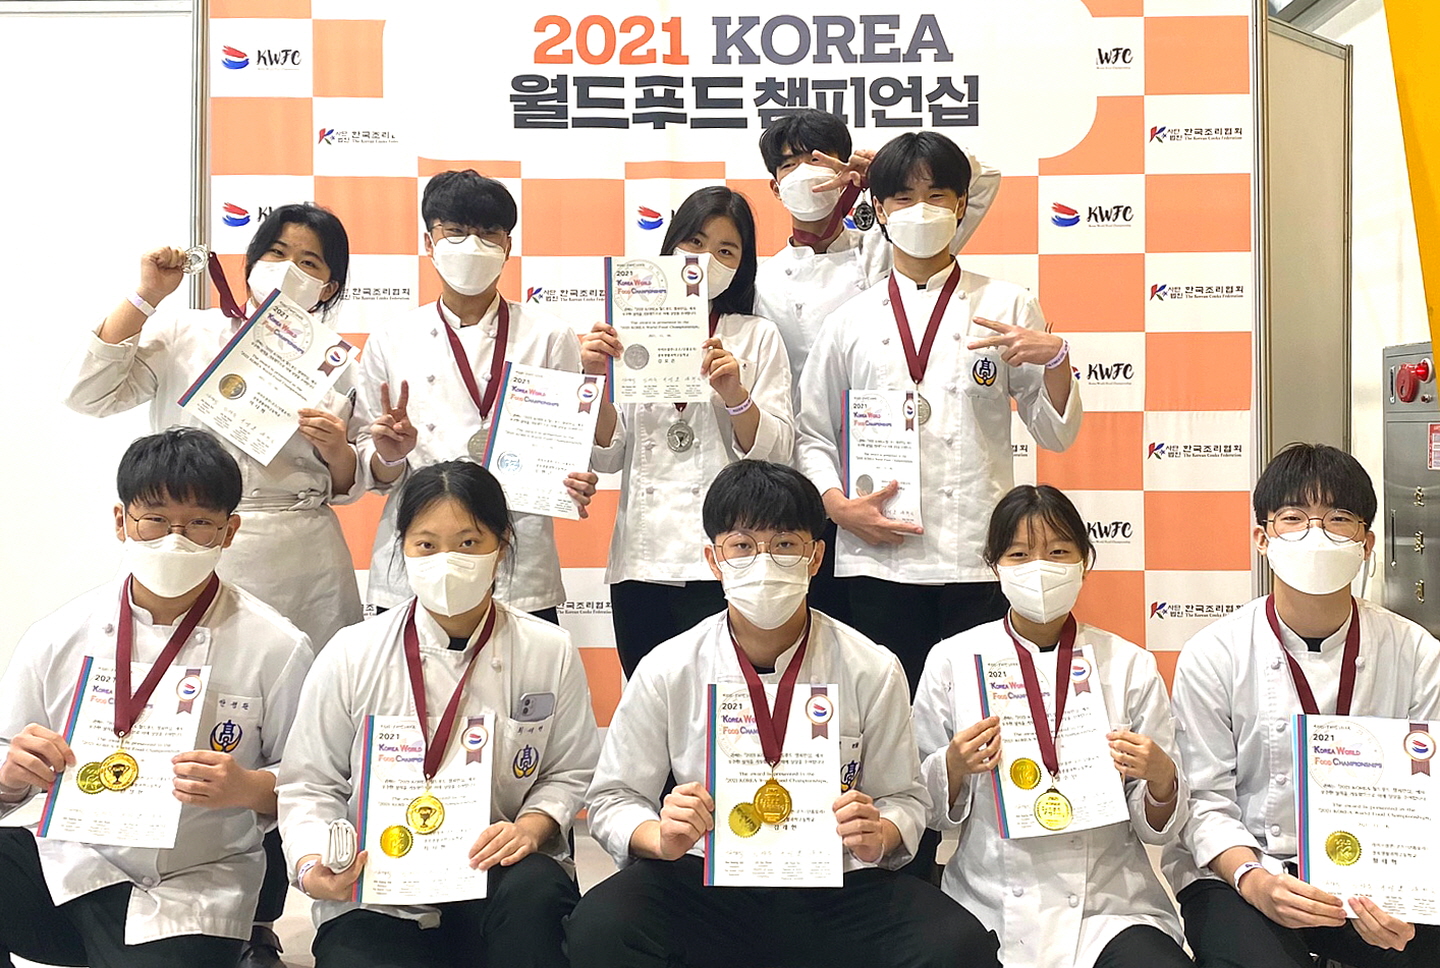 경북생활과학고, 2021 KOREA 월드푸드 챔피언십 대회 입상